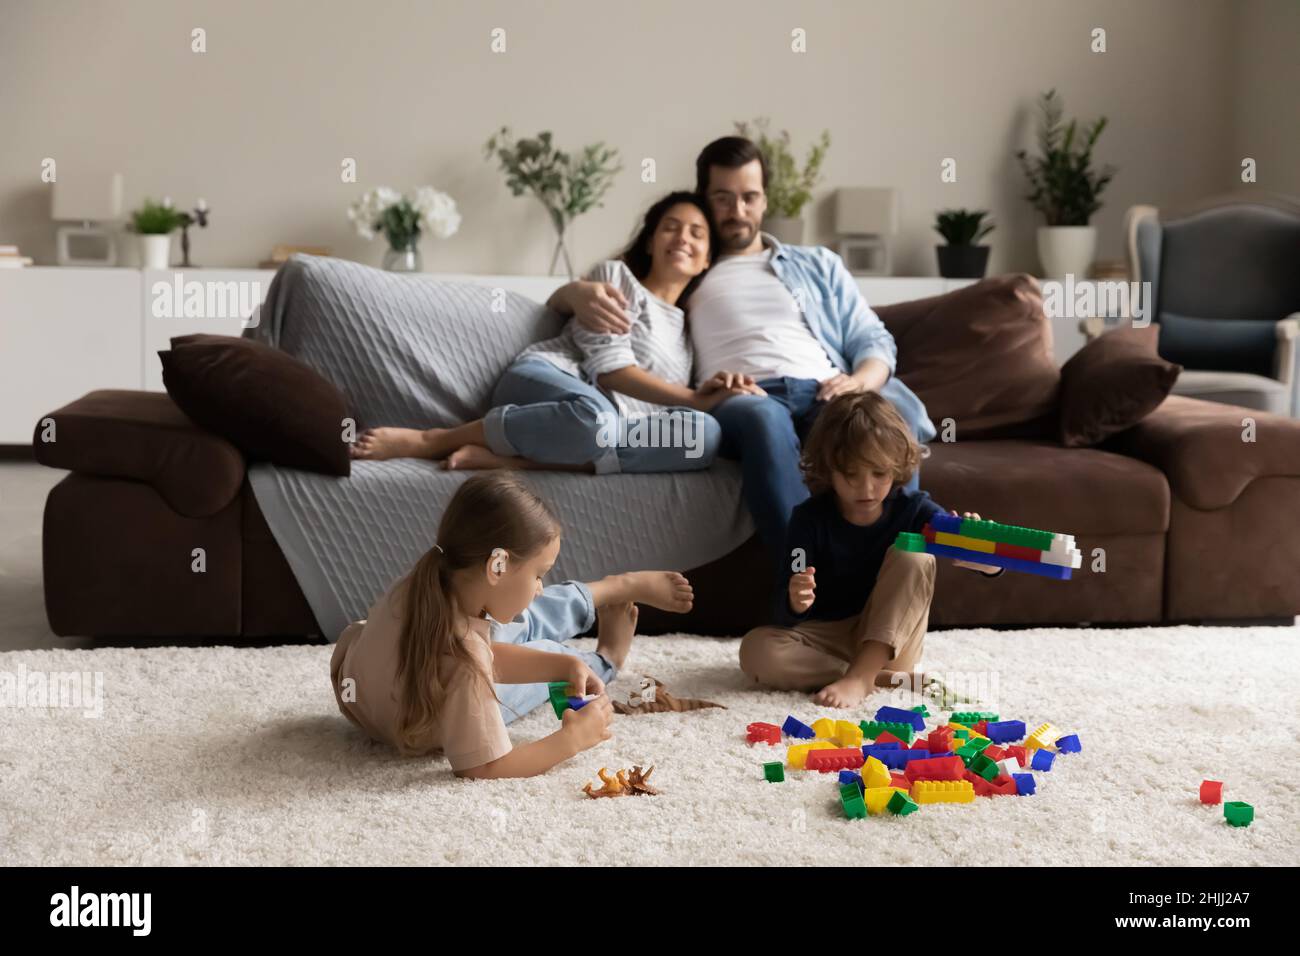 Coppia relax sul divano i loro bambini giocare con mattoni colorati Foto Stock